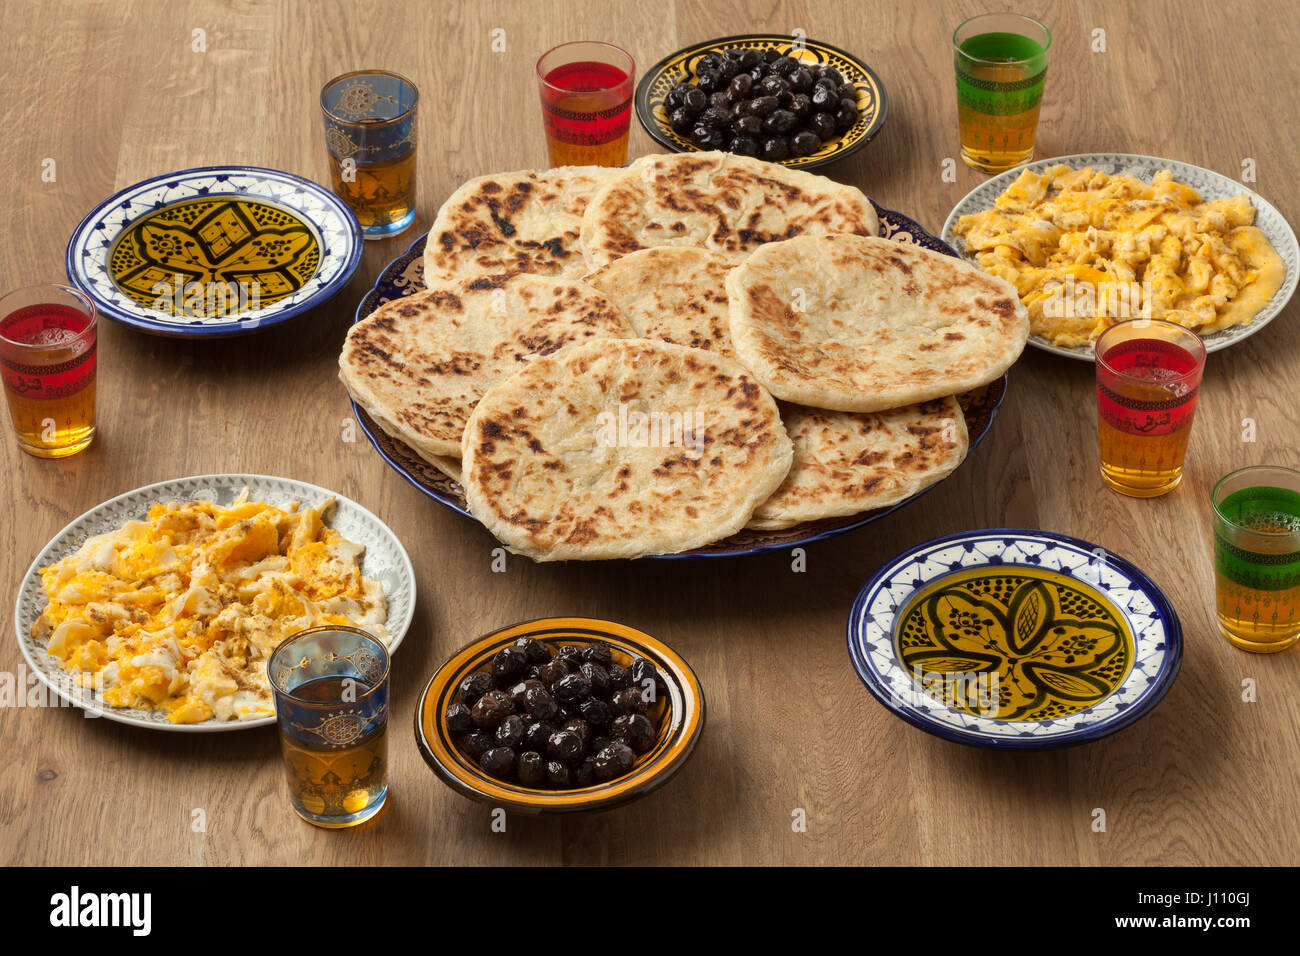 Petit-déjeuner traditionnel marocain avec des crêpes, œufs, olives noires, huile d'olive et le thé à la menthe Banque D'Images